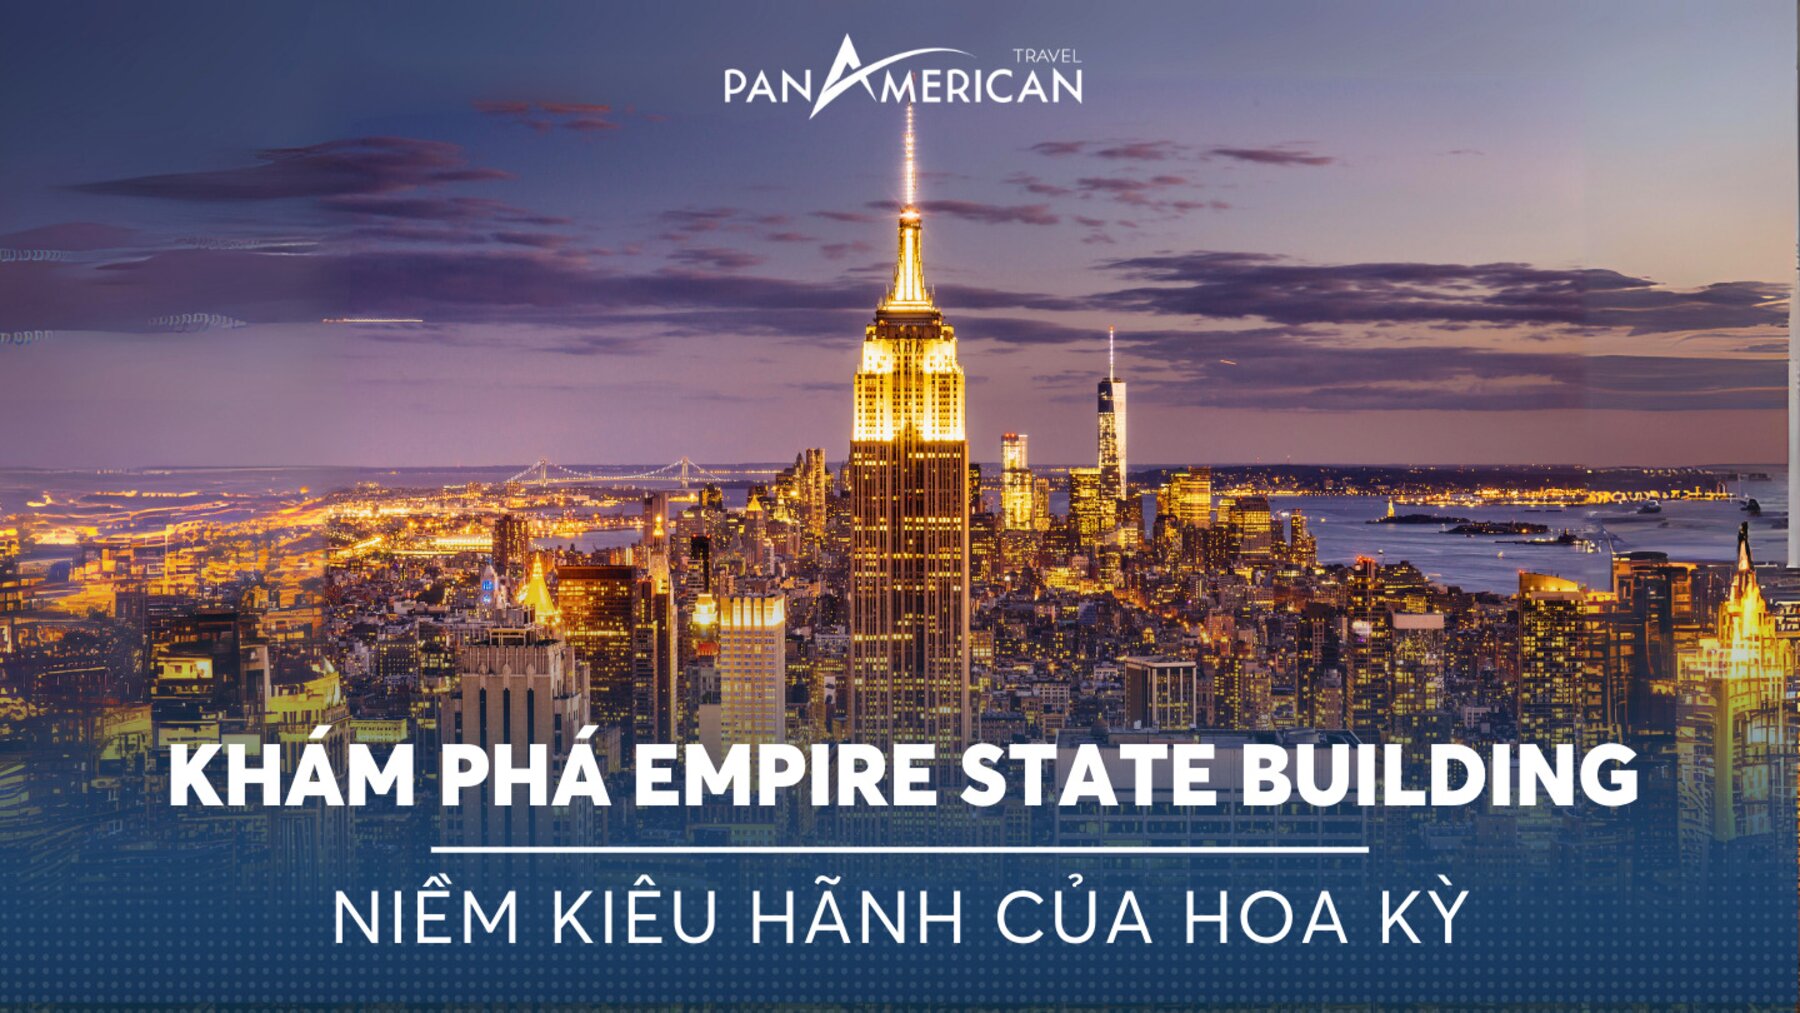 Khám phá tòa nhà Empire State Building - niềm kiêu hãnh của Hoa Kỳ  